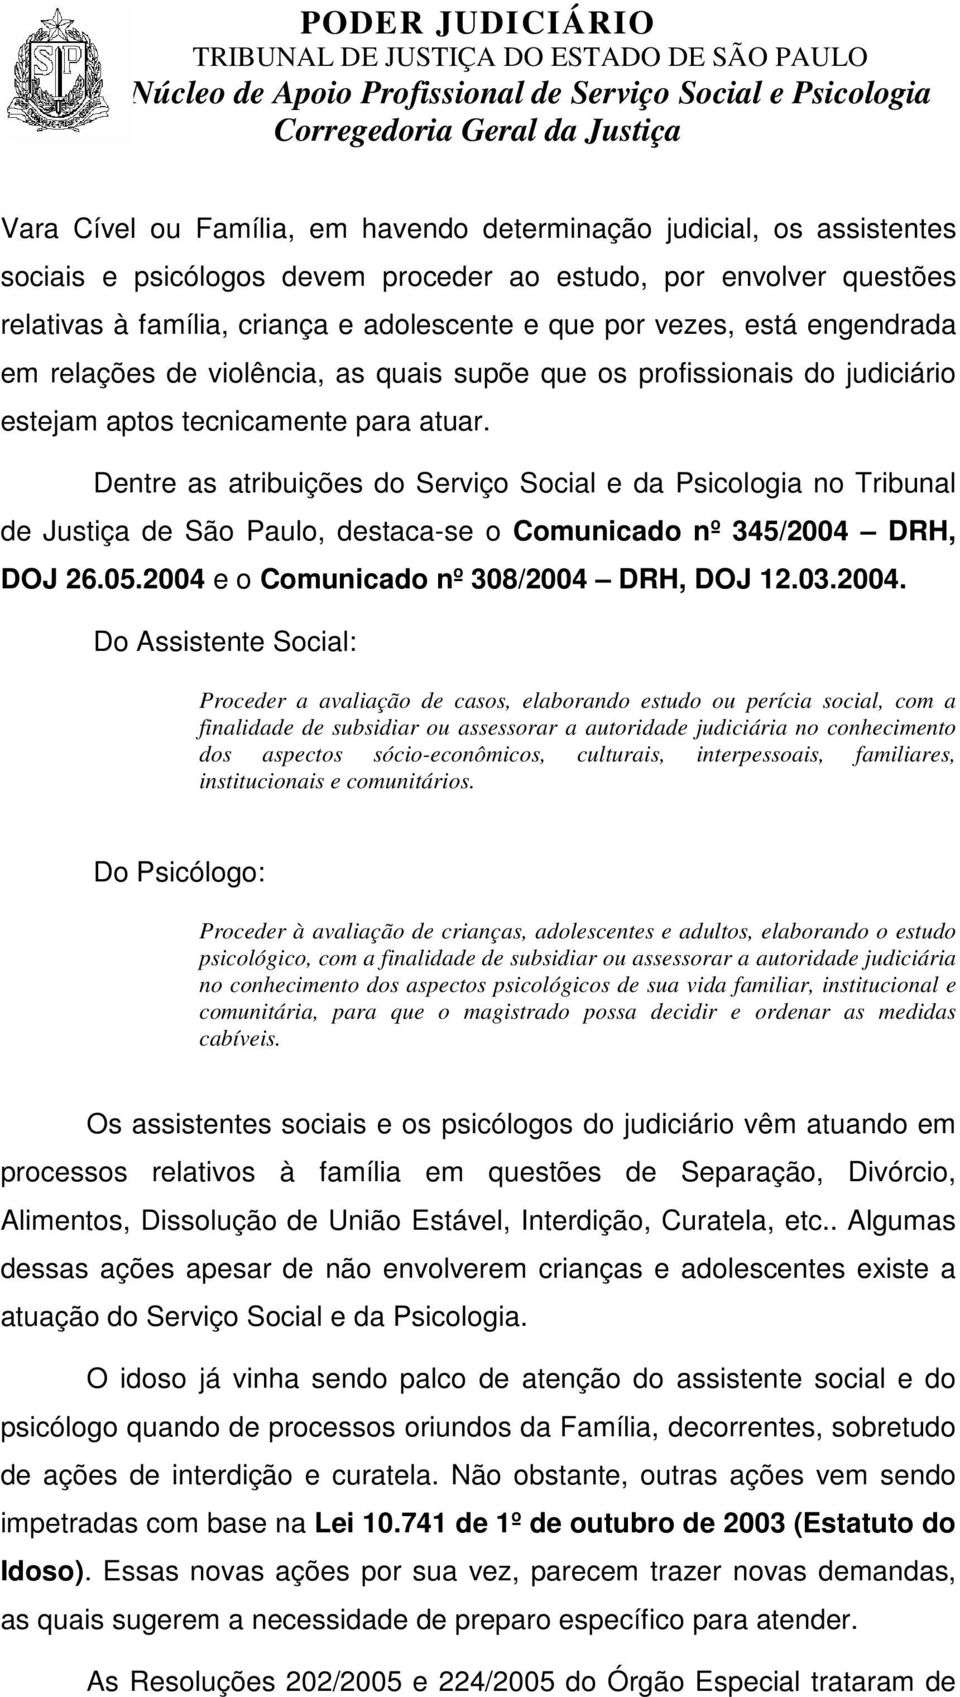 Dentre as atribuições do Serviço Social e da Psicologia no Tribunal de Justiça de São Paulo, destaca-se o Comunicado nº 345/2004 